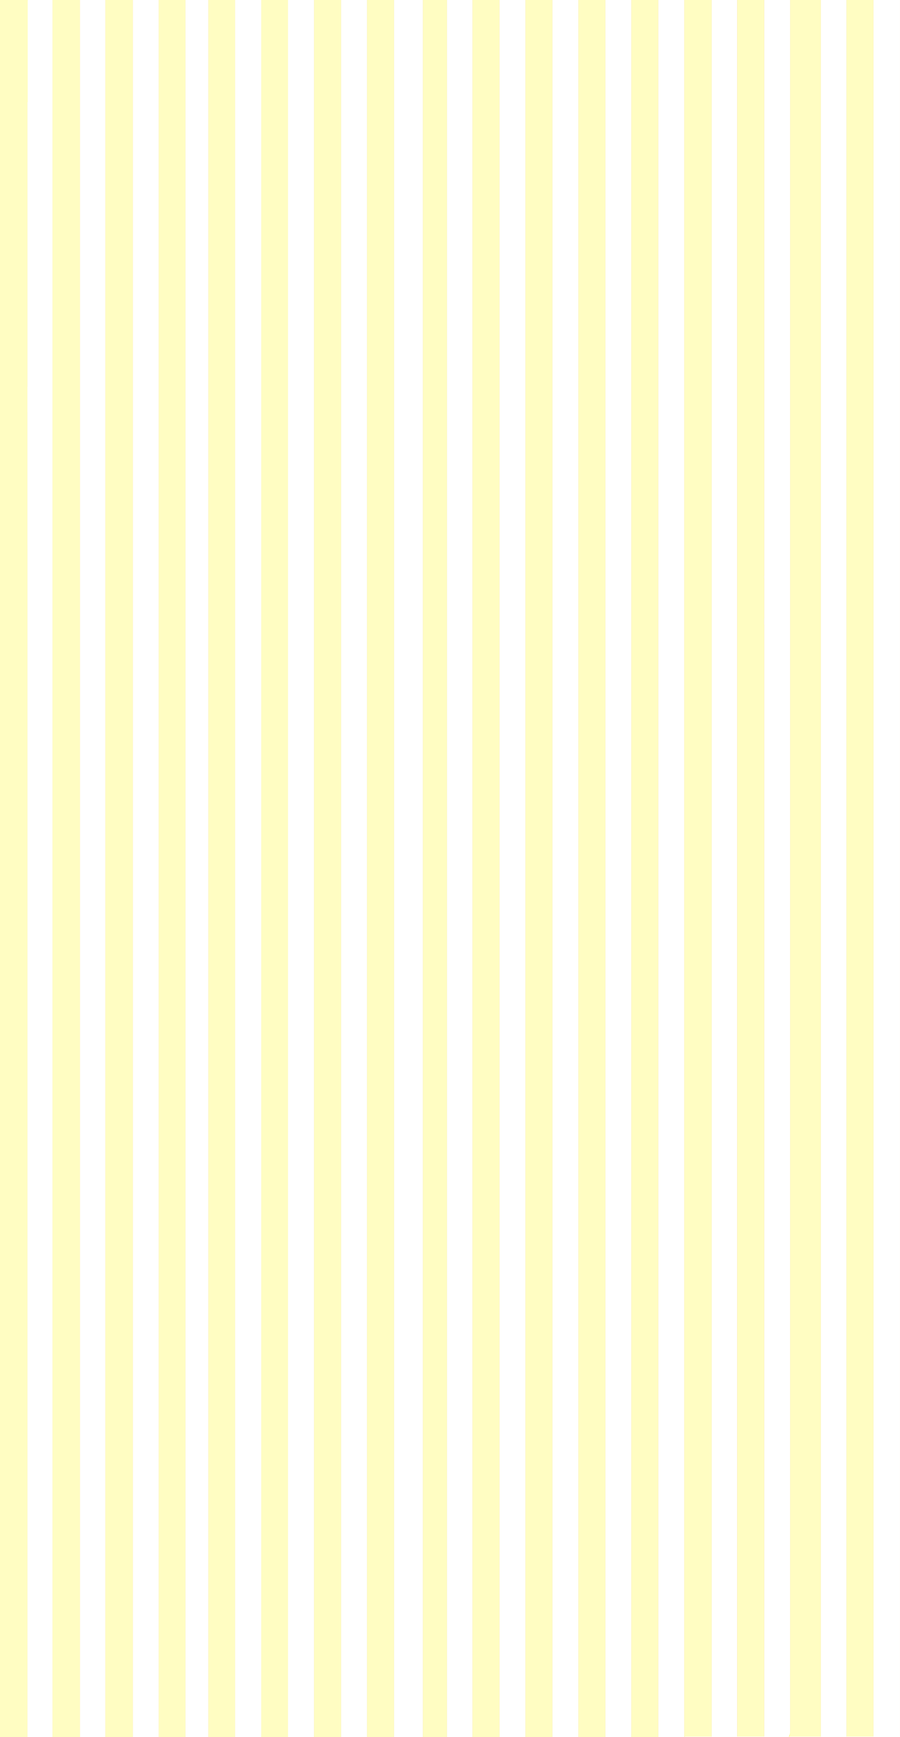 Pastel Yellow Laptop Wallpapers - Top Những Hình Ảnh Đẹp